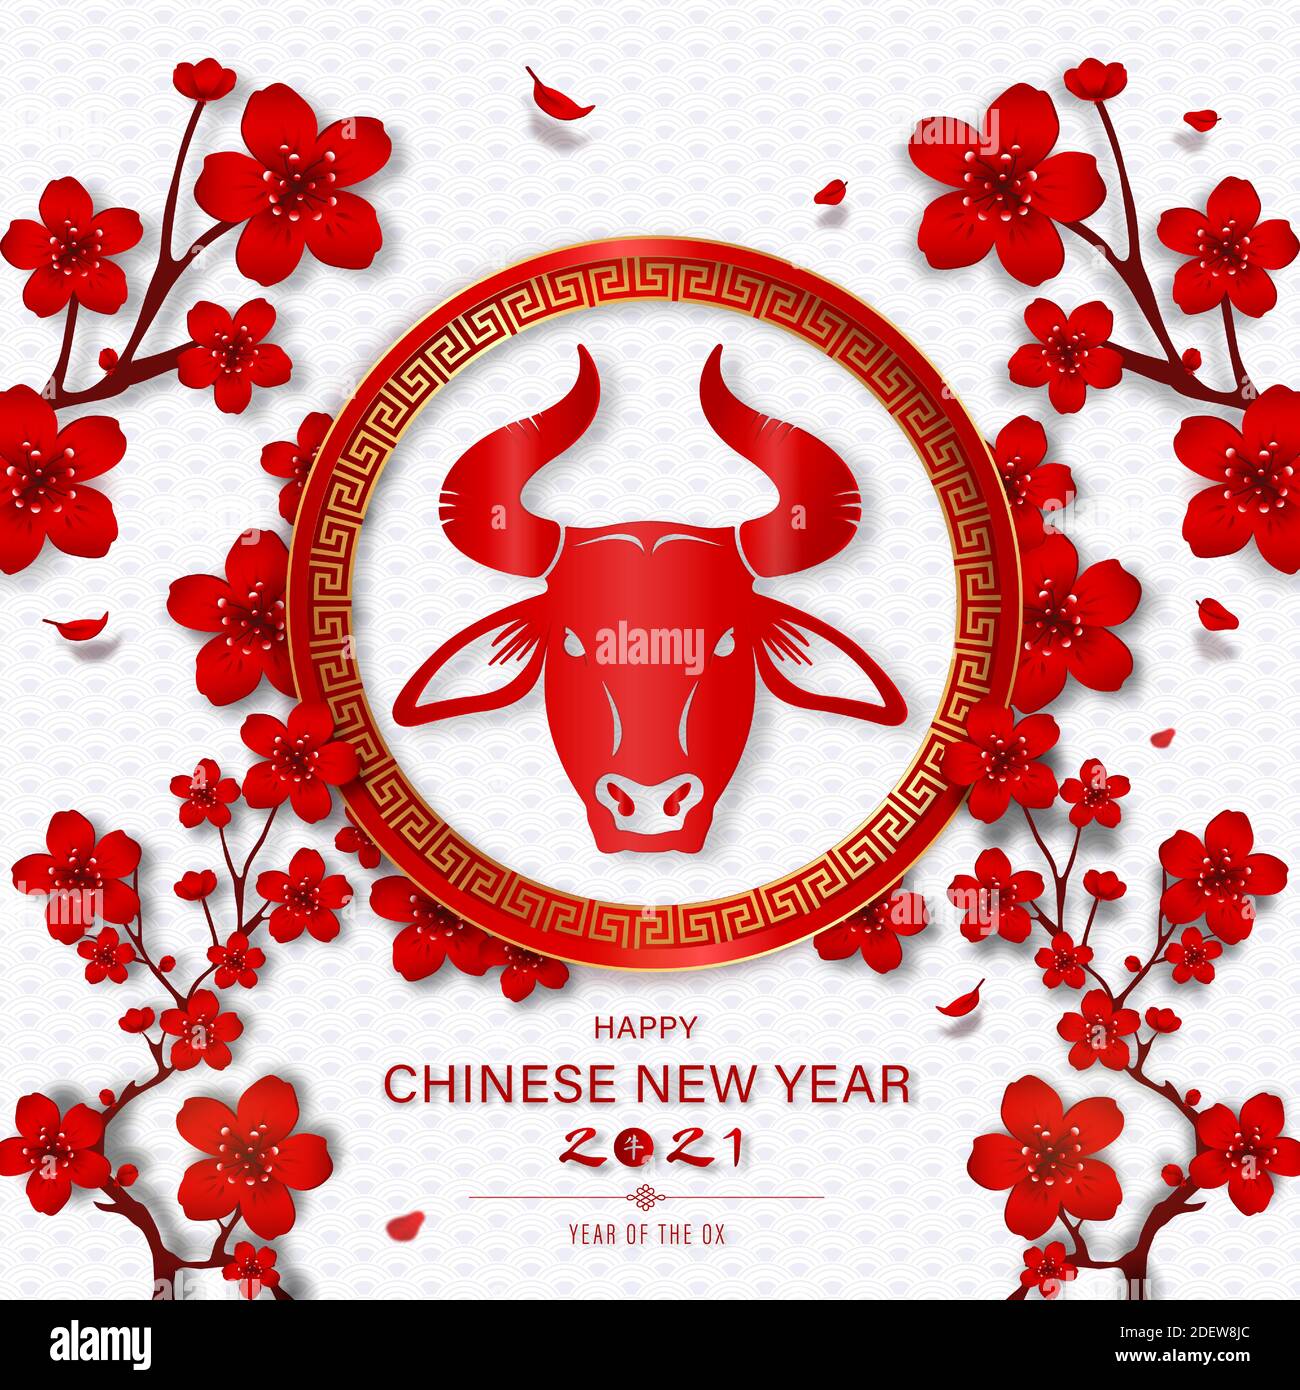 Joyeux nouvel an chinois 2021 sur un motif blanc de style oriental Arrière-plan avec des fleurs rouges et du texte chinois signifie ox Illustration de Vecteur